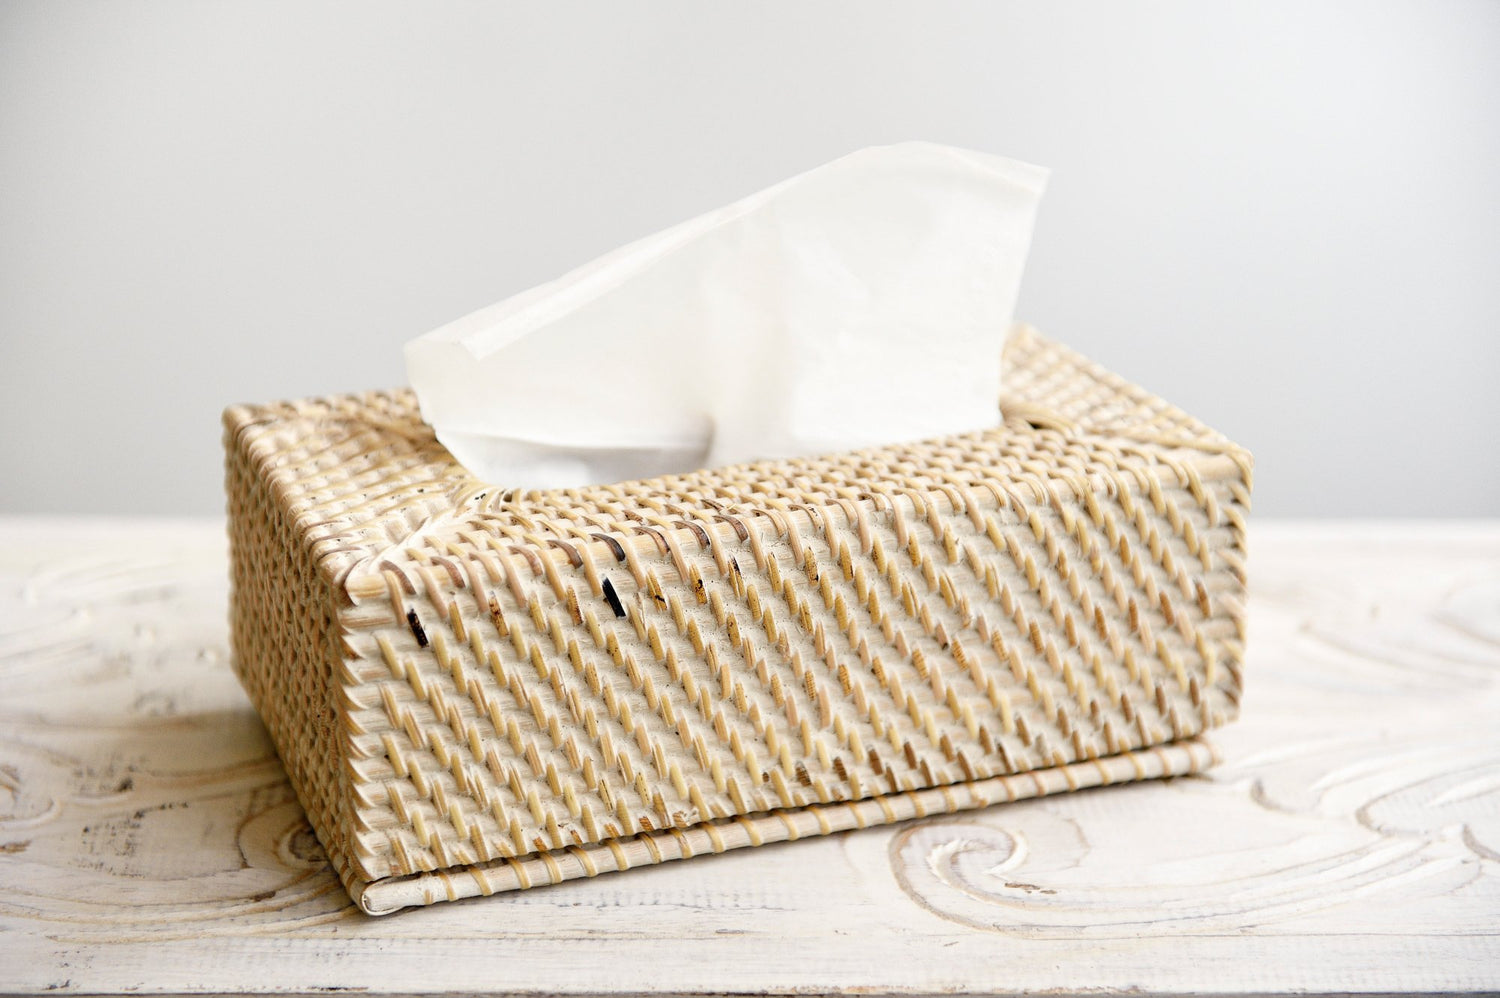 Rattan Tissue Box - white wash - Decor